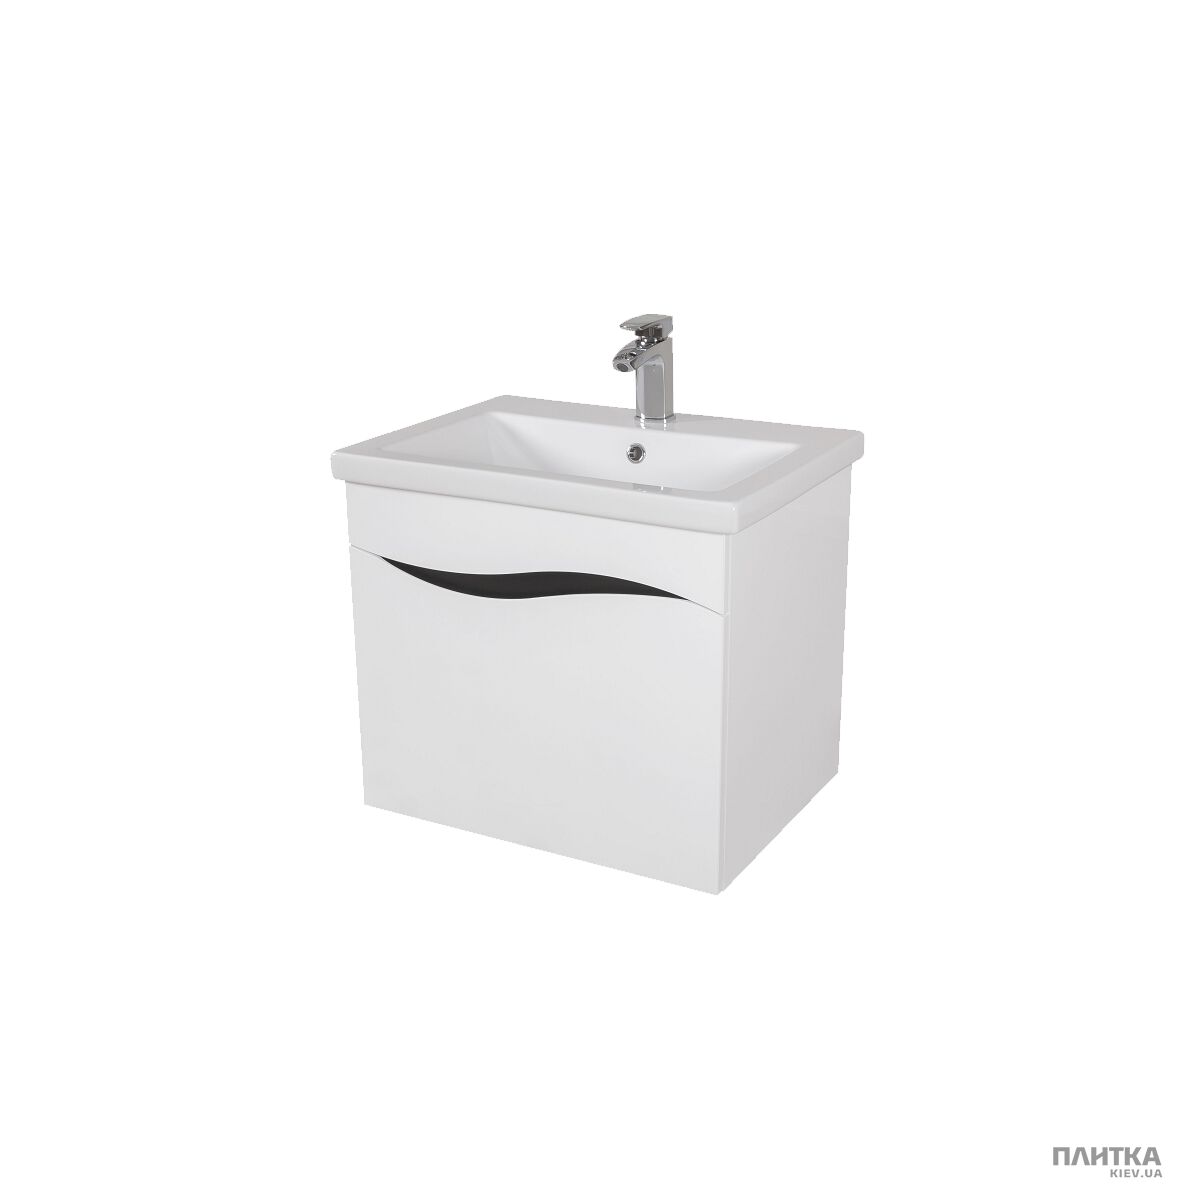 Мебель для ванной комнаты Аква Родос Альфа АЛЬФА-60 "Como" белый